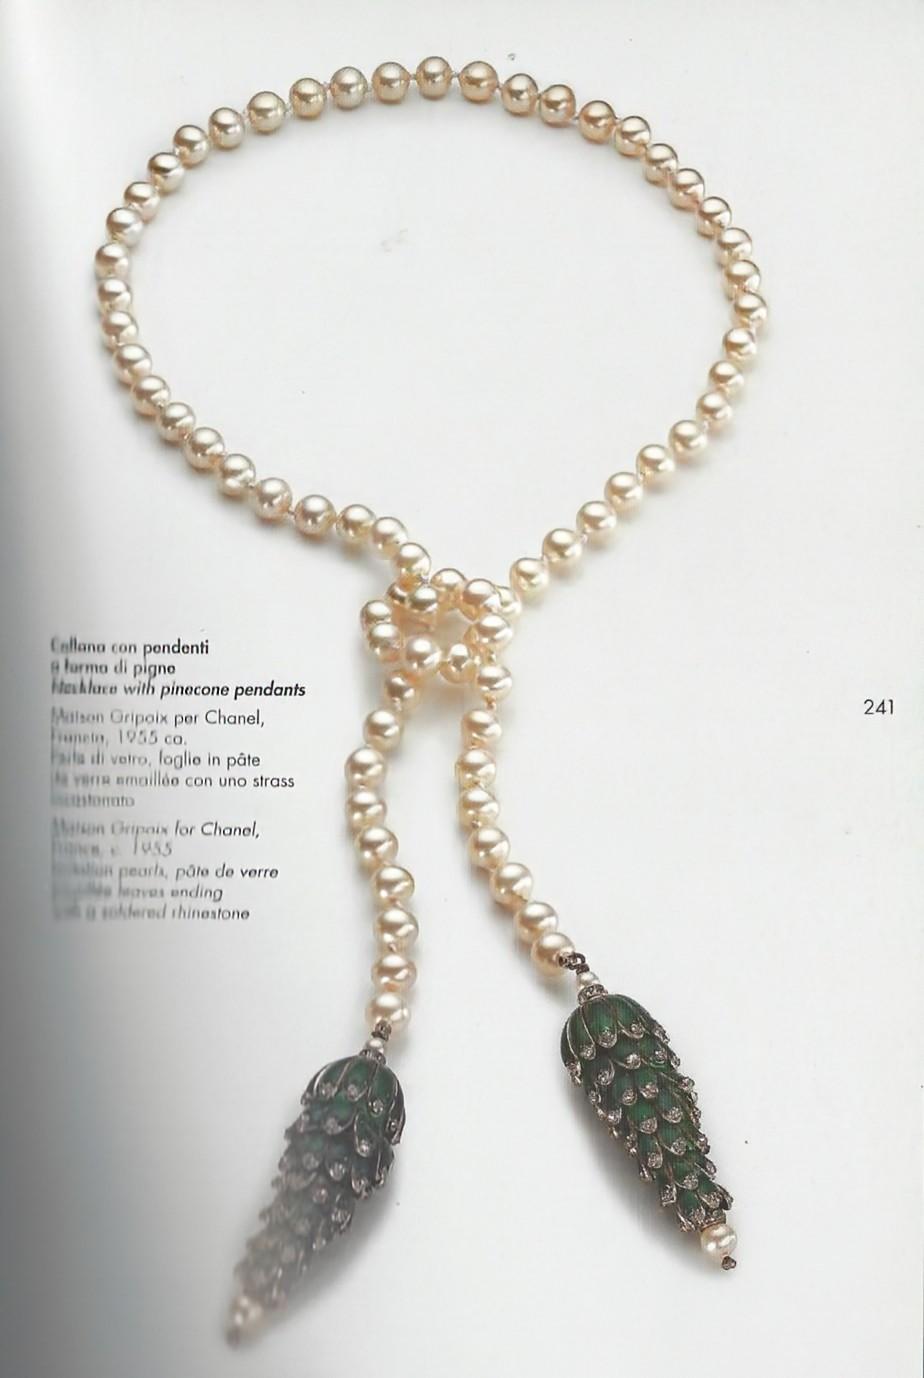 Coco Chanel Maison Gripoix Sautoir Necklace, Rare Book Piece For Sale 5